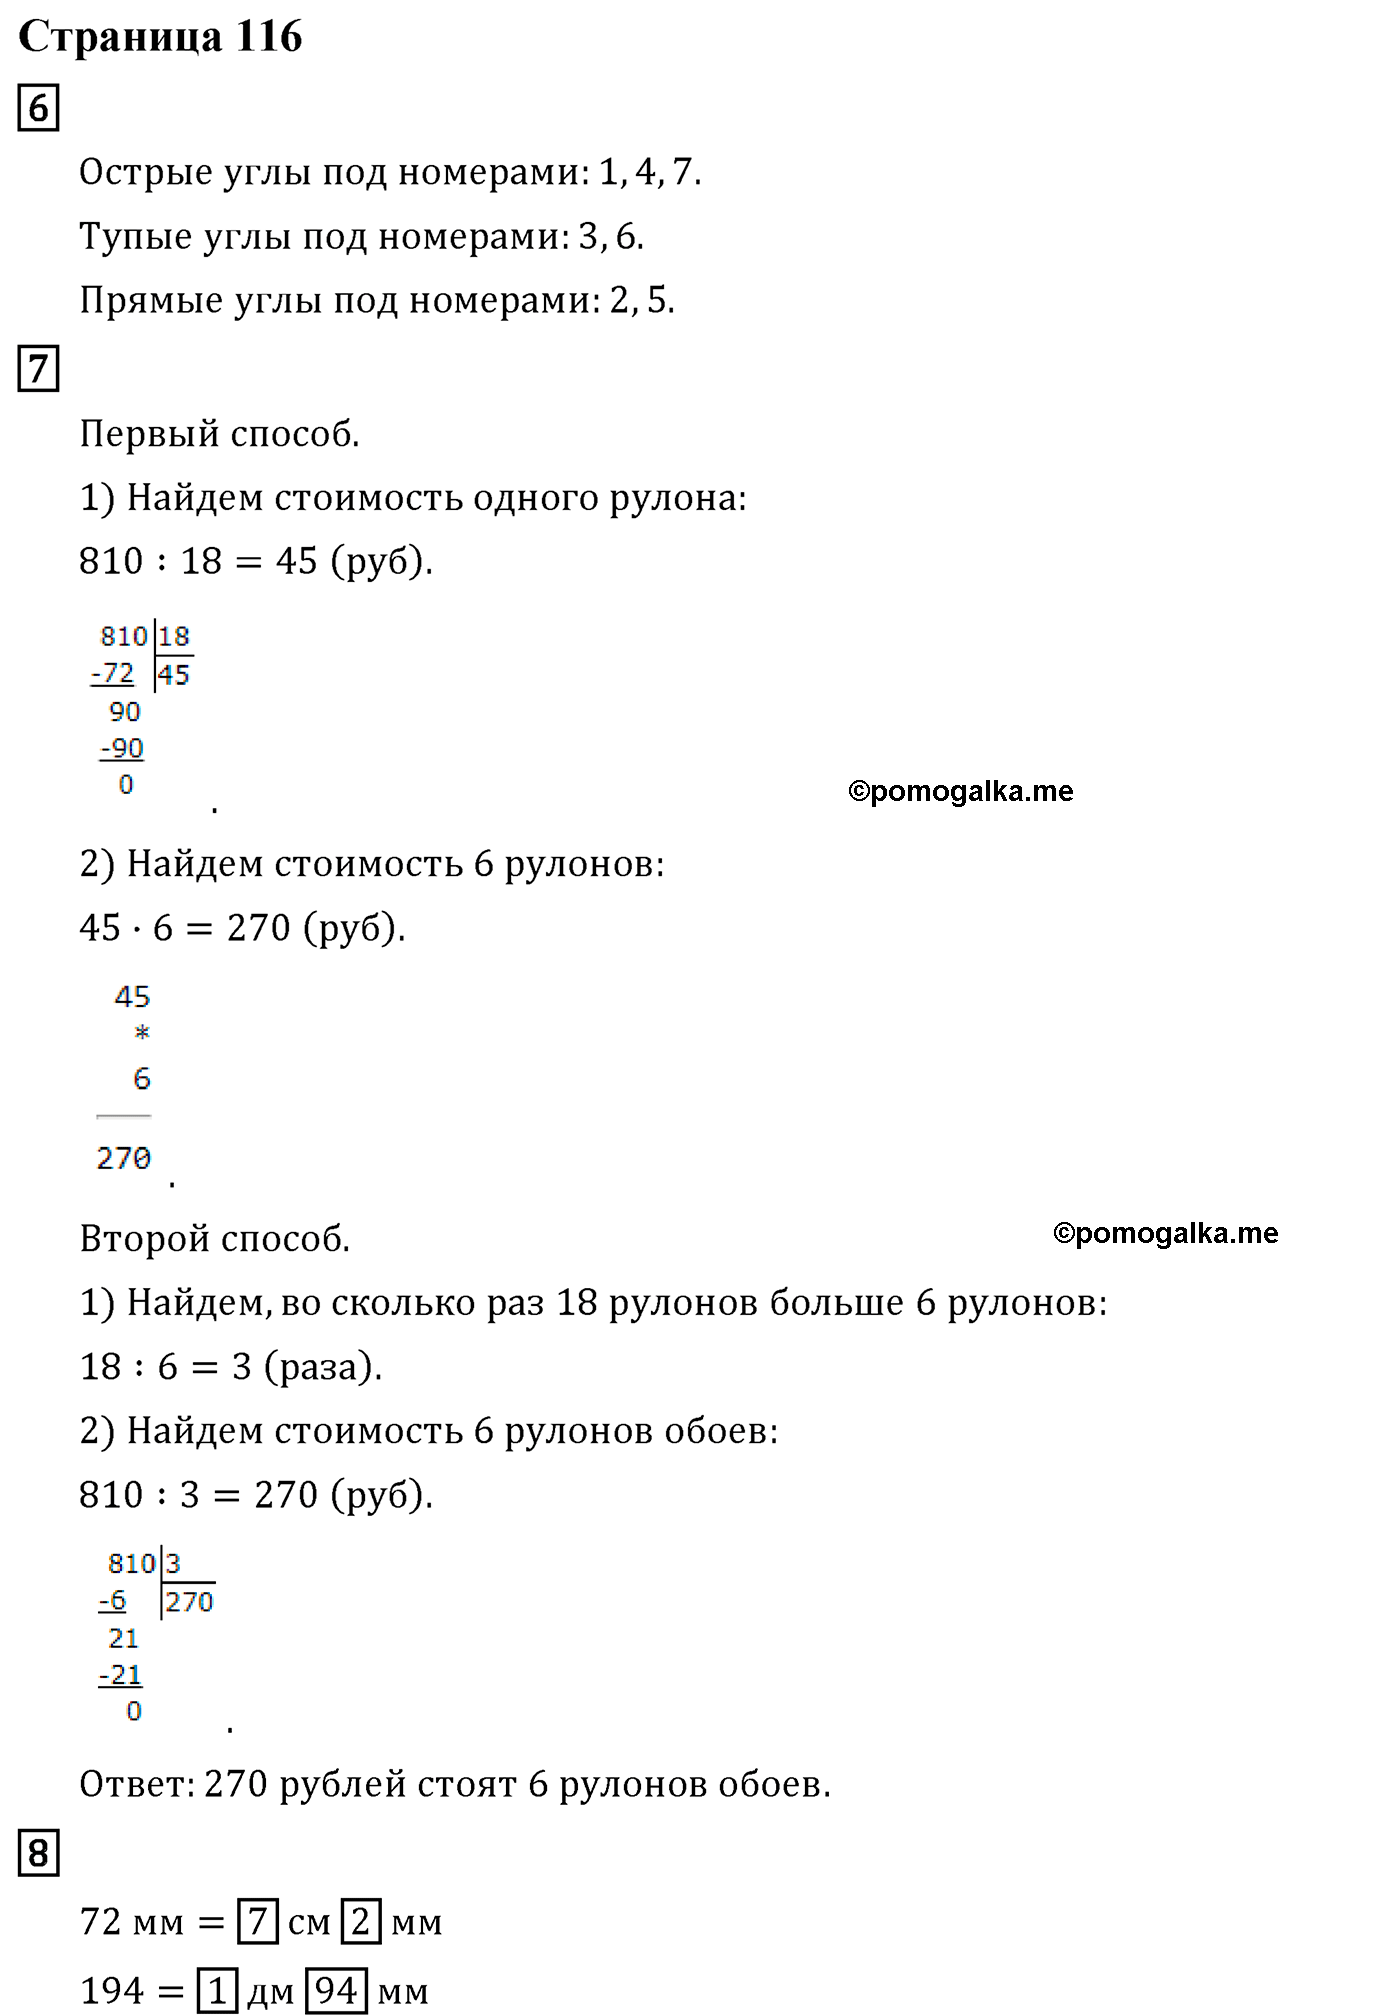 Страница №116 Часть 1 математика 4 класс Дорофеев